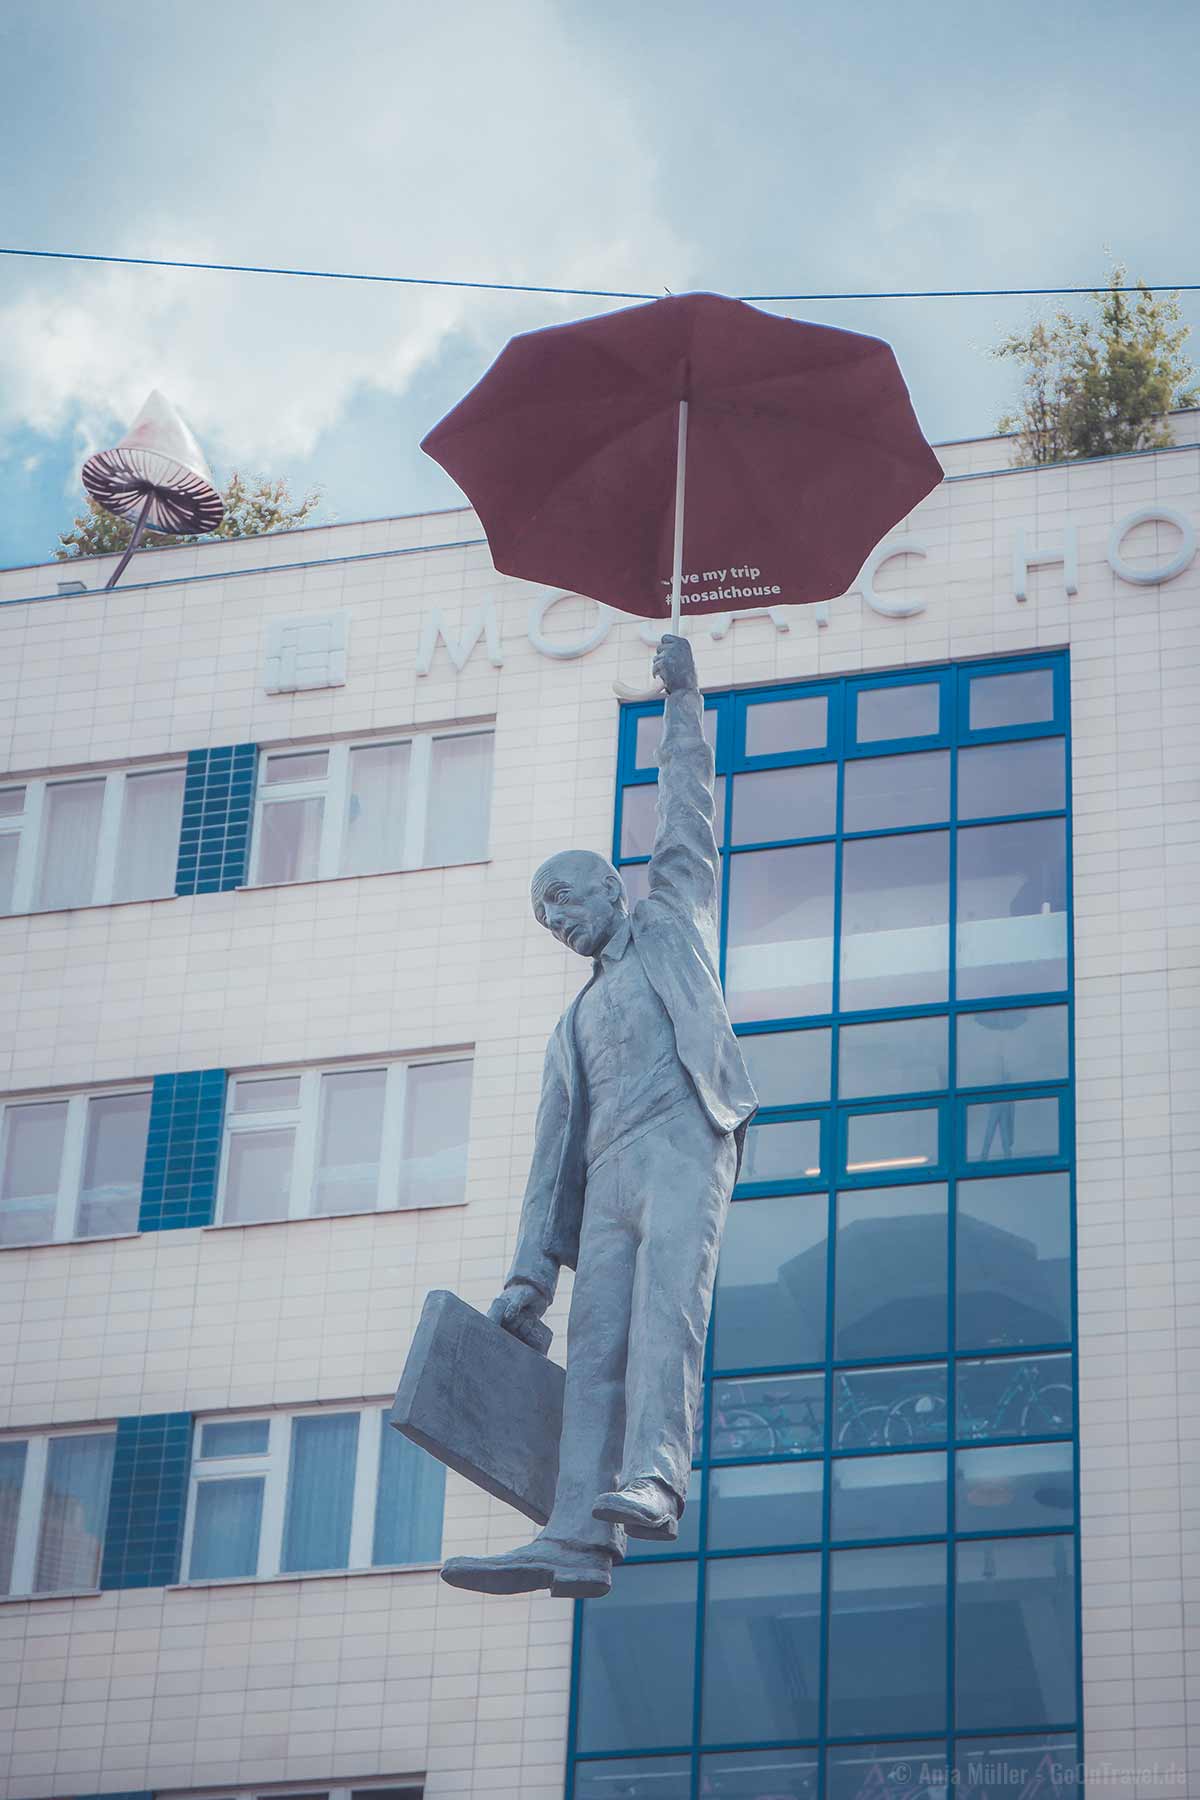 Tolles Fotomotiv in Prag: Hanging Umbrella Man